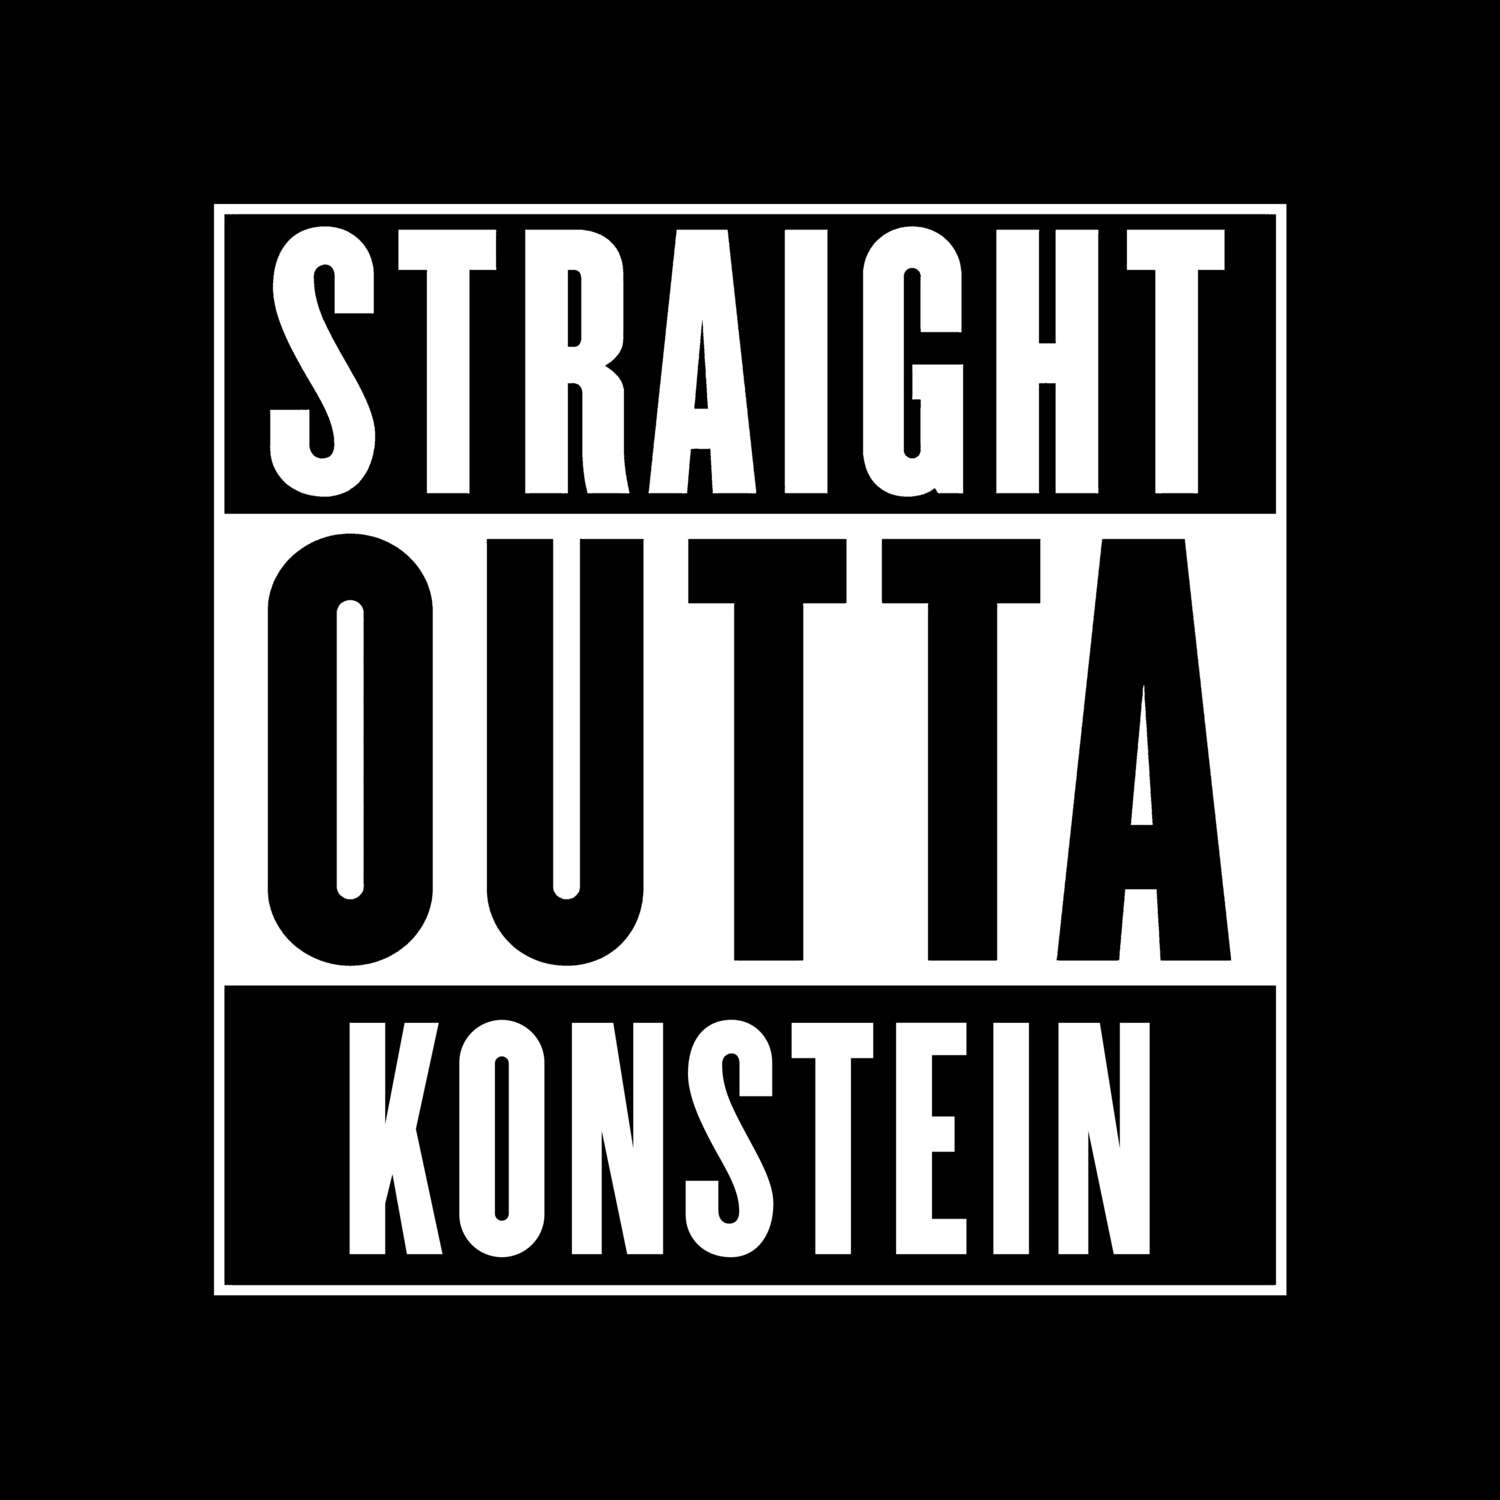 Konstein T-Shirt »Straight Outta«